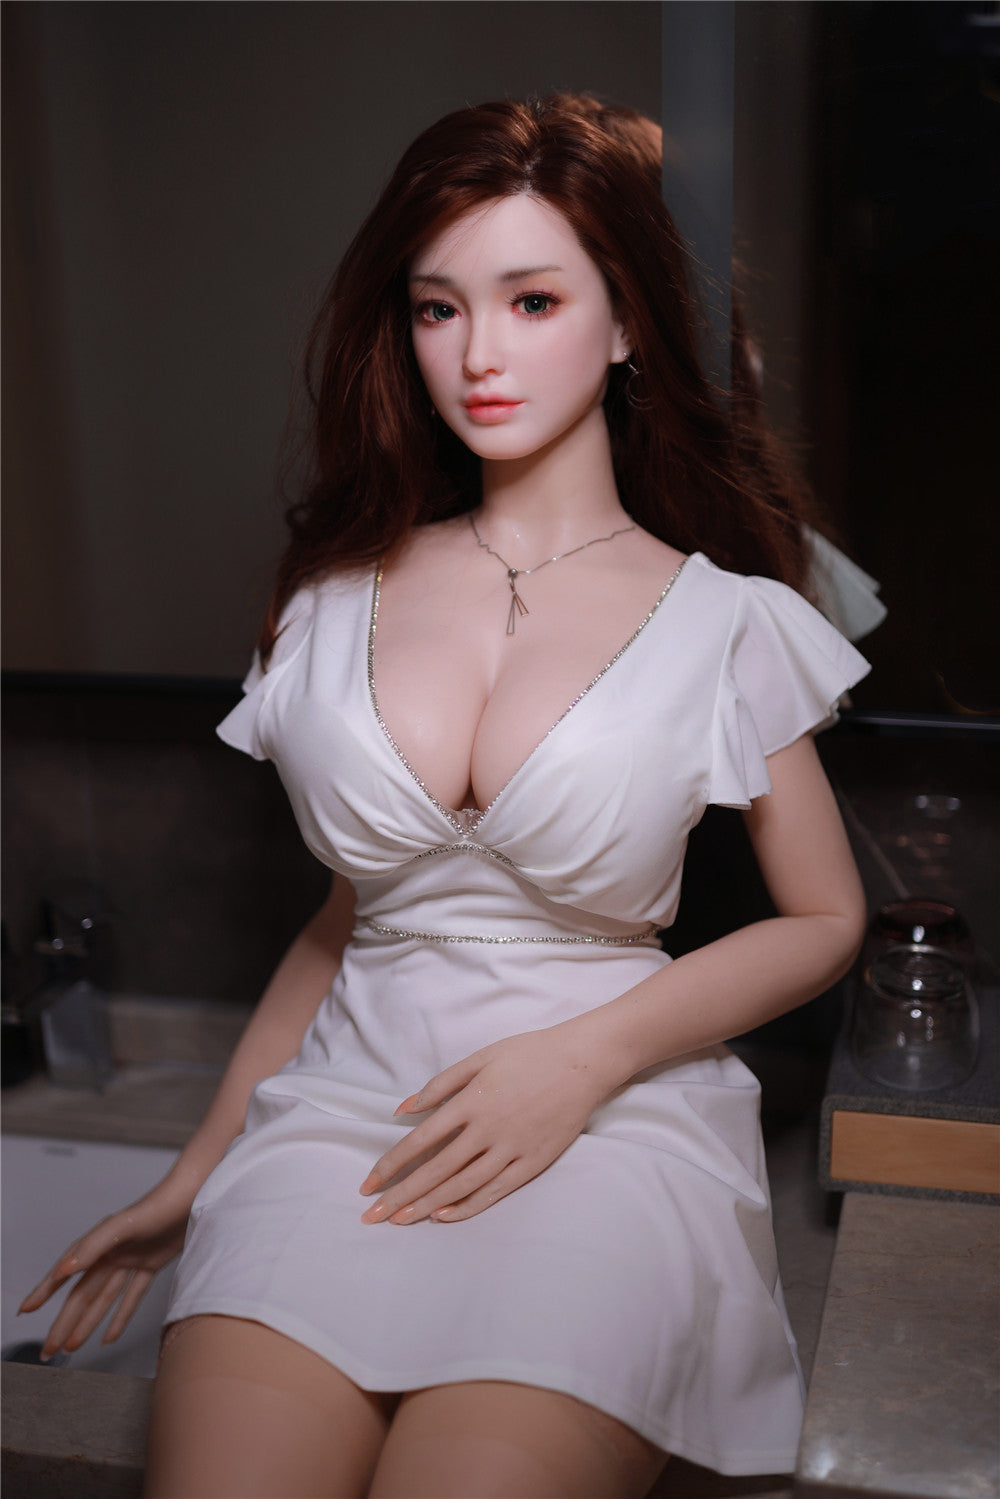 JY Doll - Lifelike Love Doll - 5ft 4in (163cm) - Scarlett - Love Dolls 4U